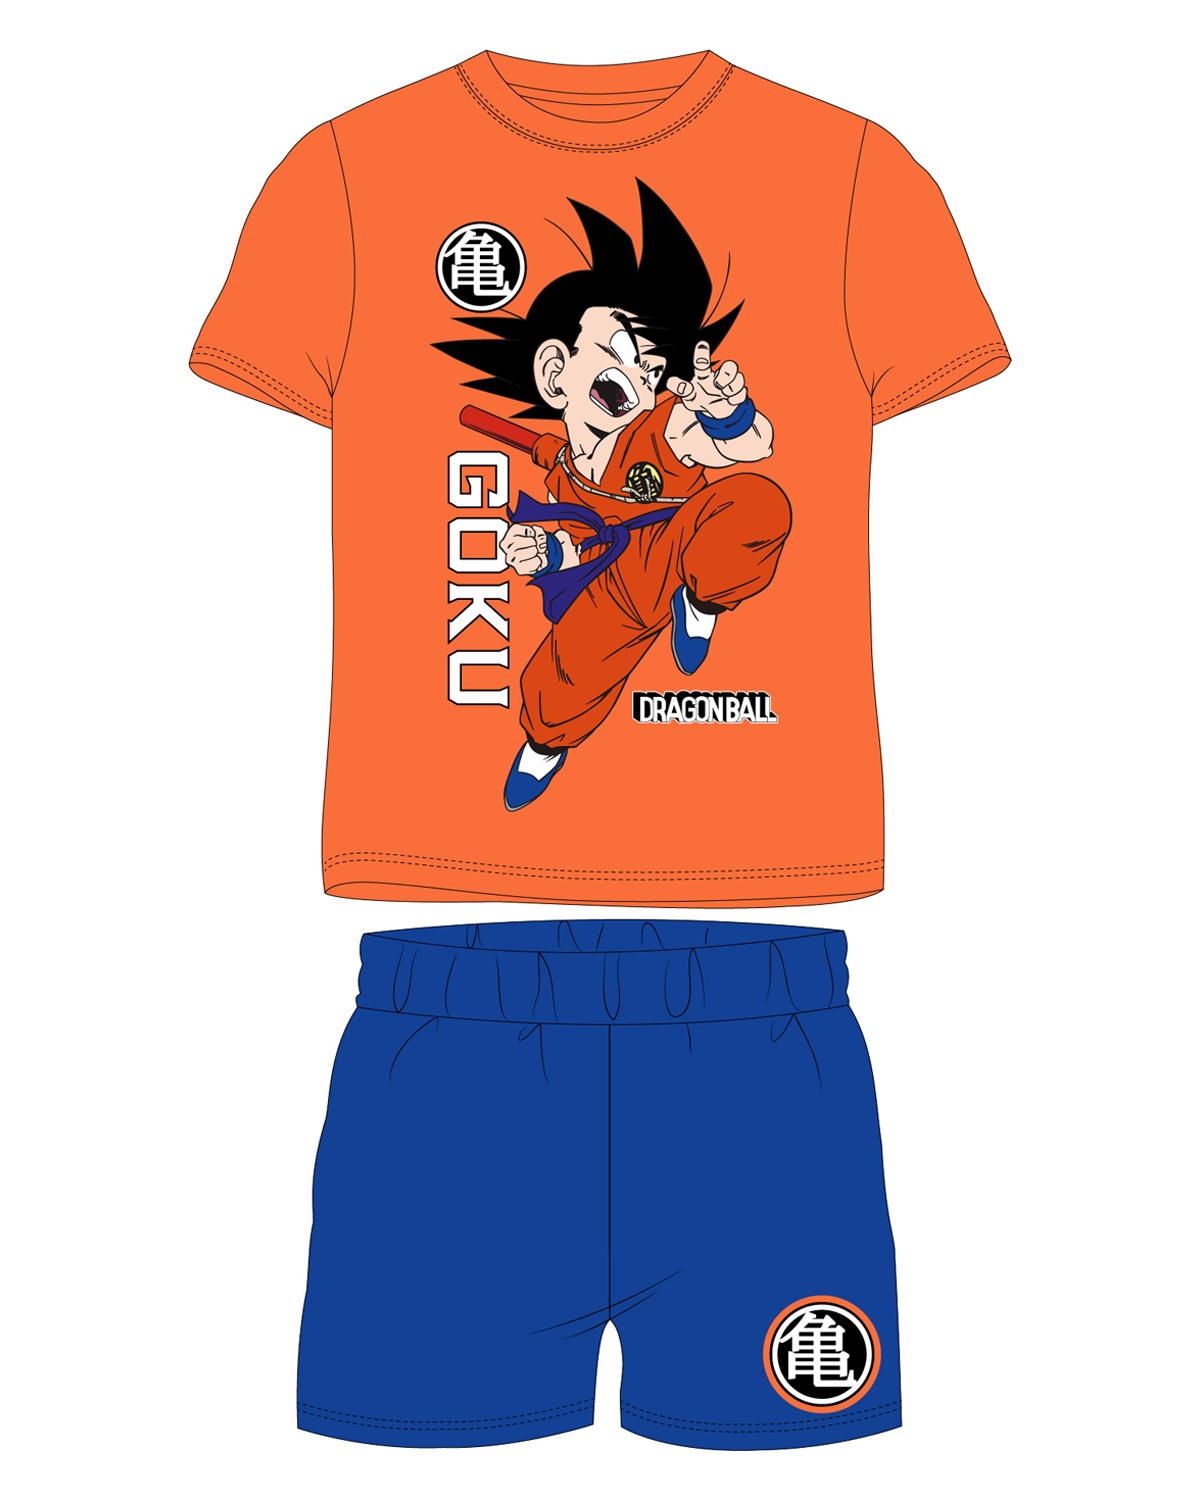 Dragon Ball - licence Chlapecké pyžamo - Dragon Ball 5204072, oranžová / modrá Barva: Oranžová, Velikost: 158